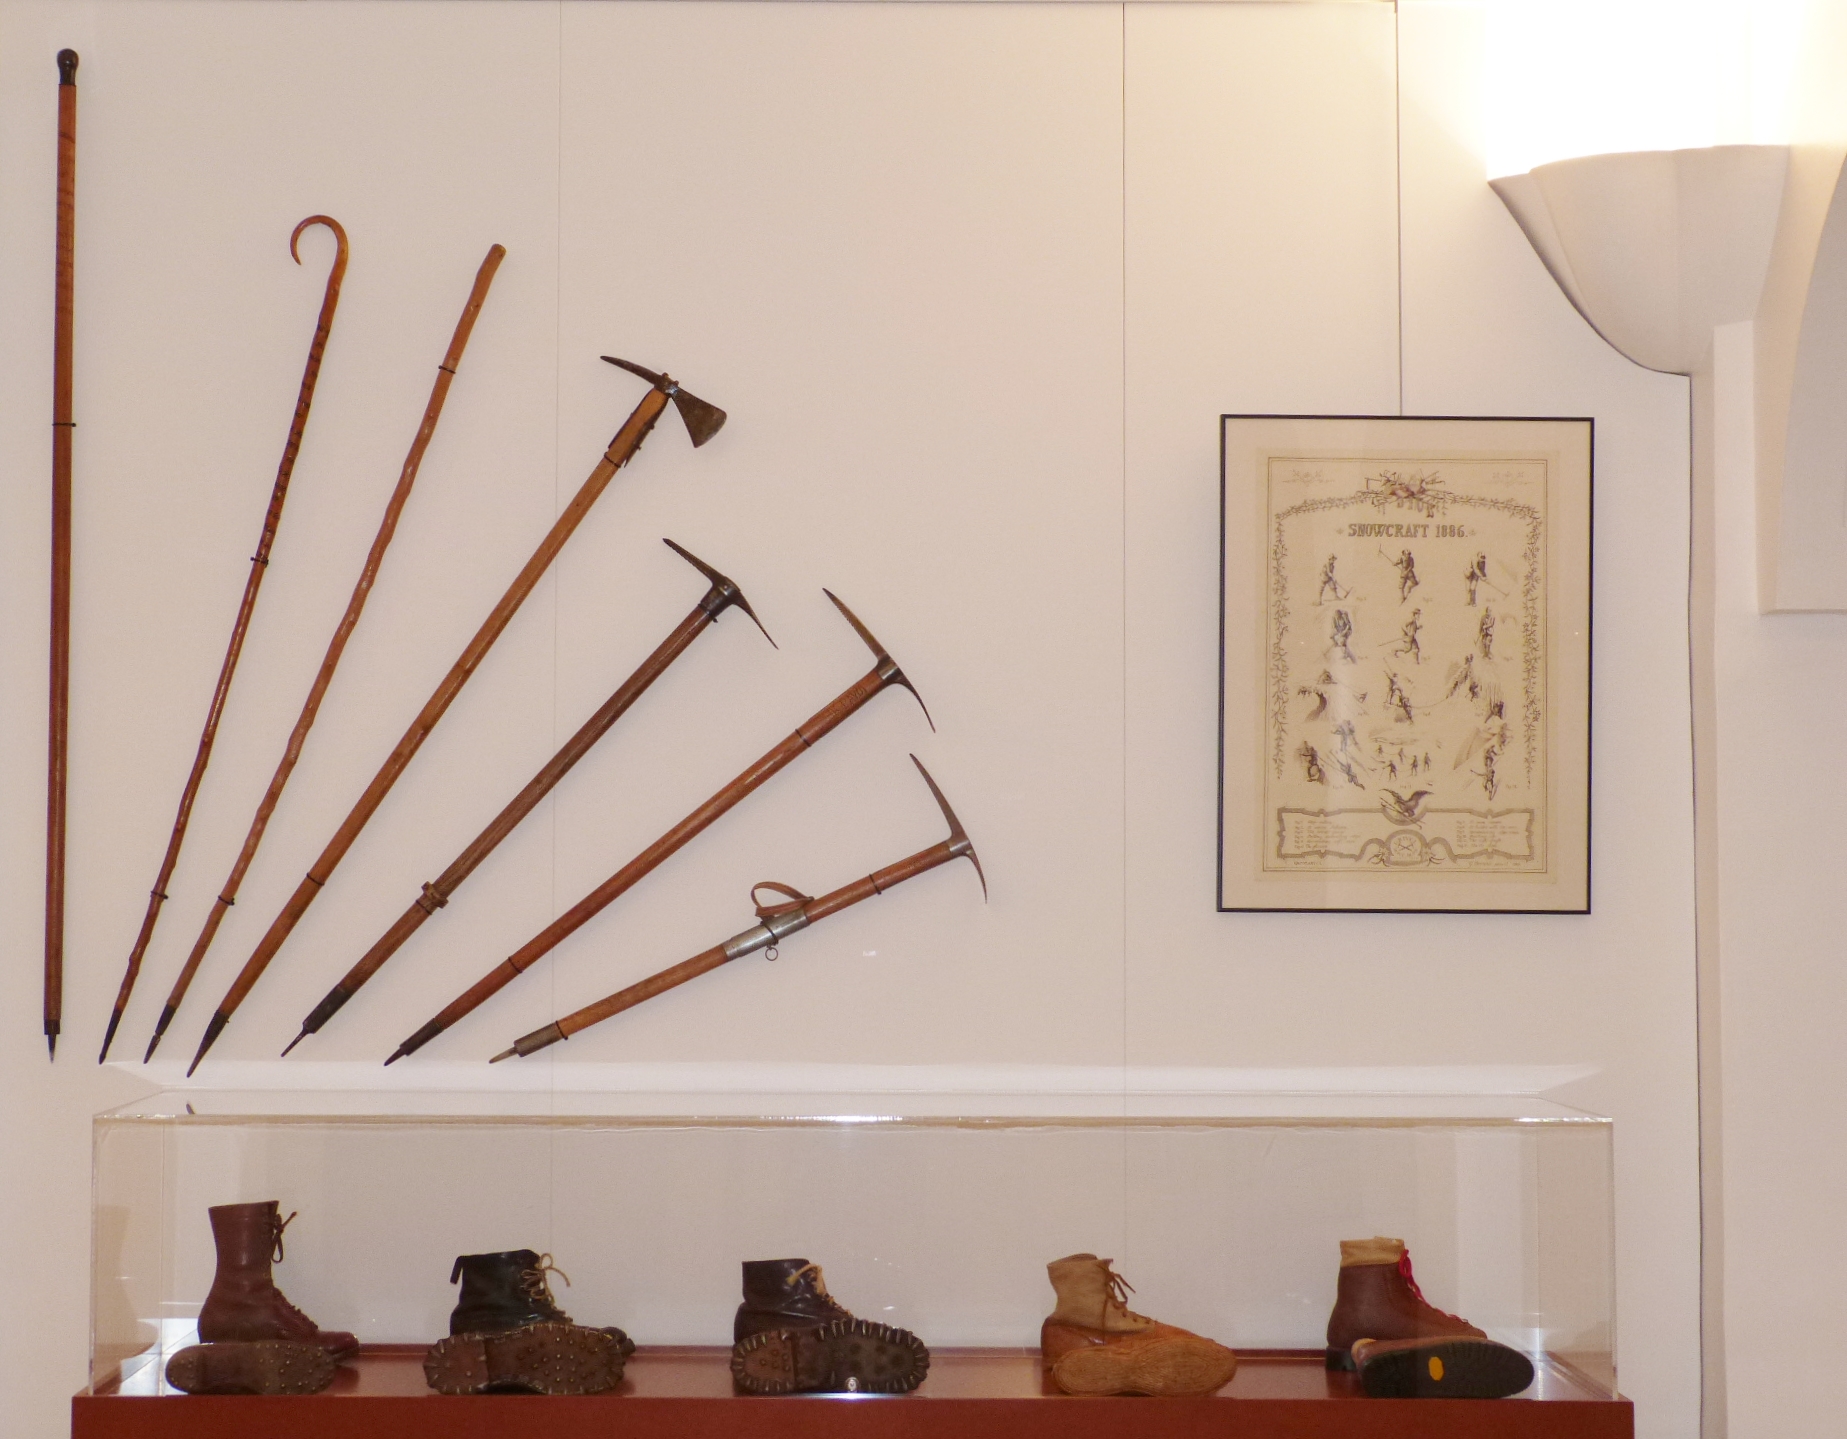 Le matériel de l'alpiniste, collections du musée Alpin